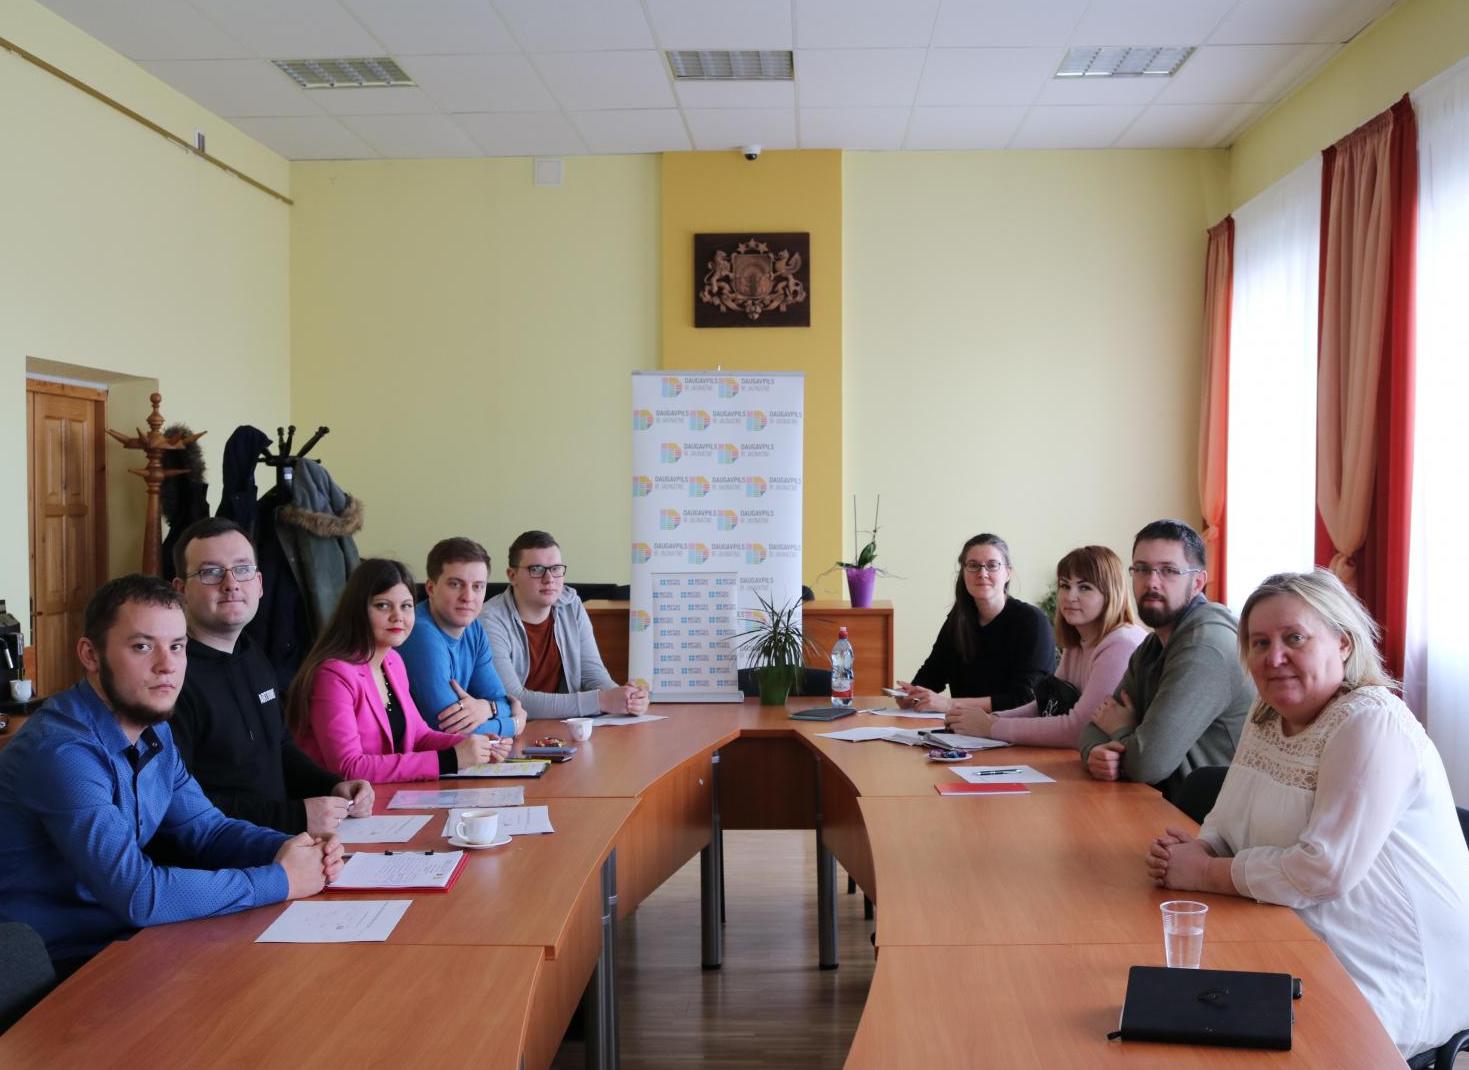 Sadarbība ar Daugavpils jauniešu lietu speciālistiem, jauniešiem un British Council pārstāvi